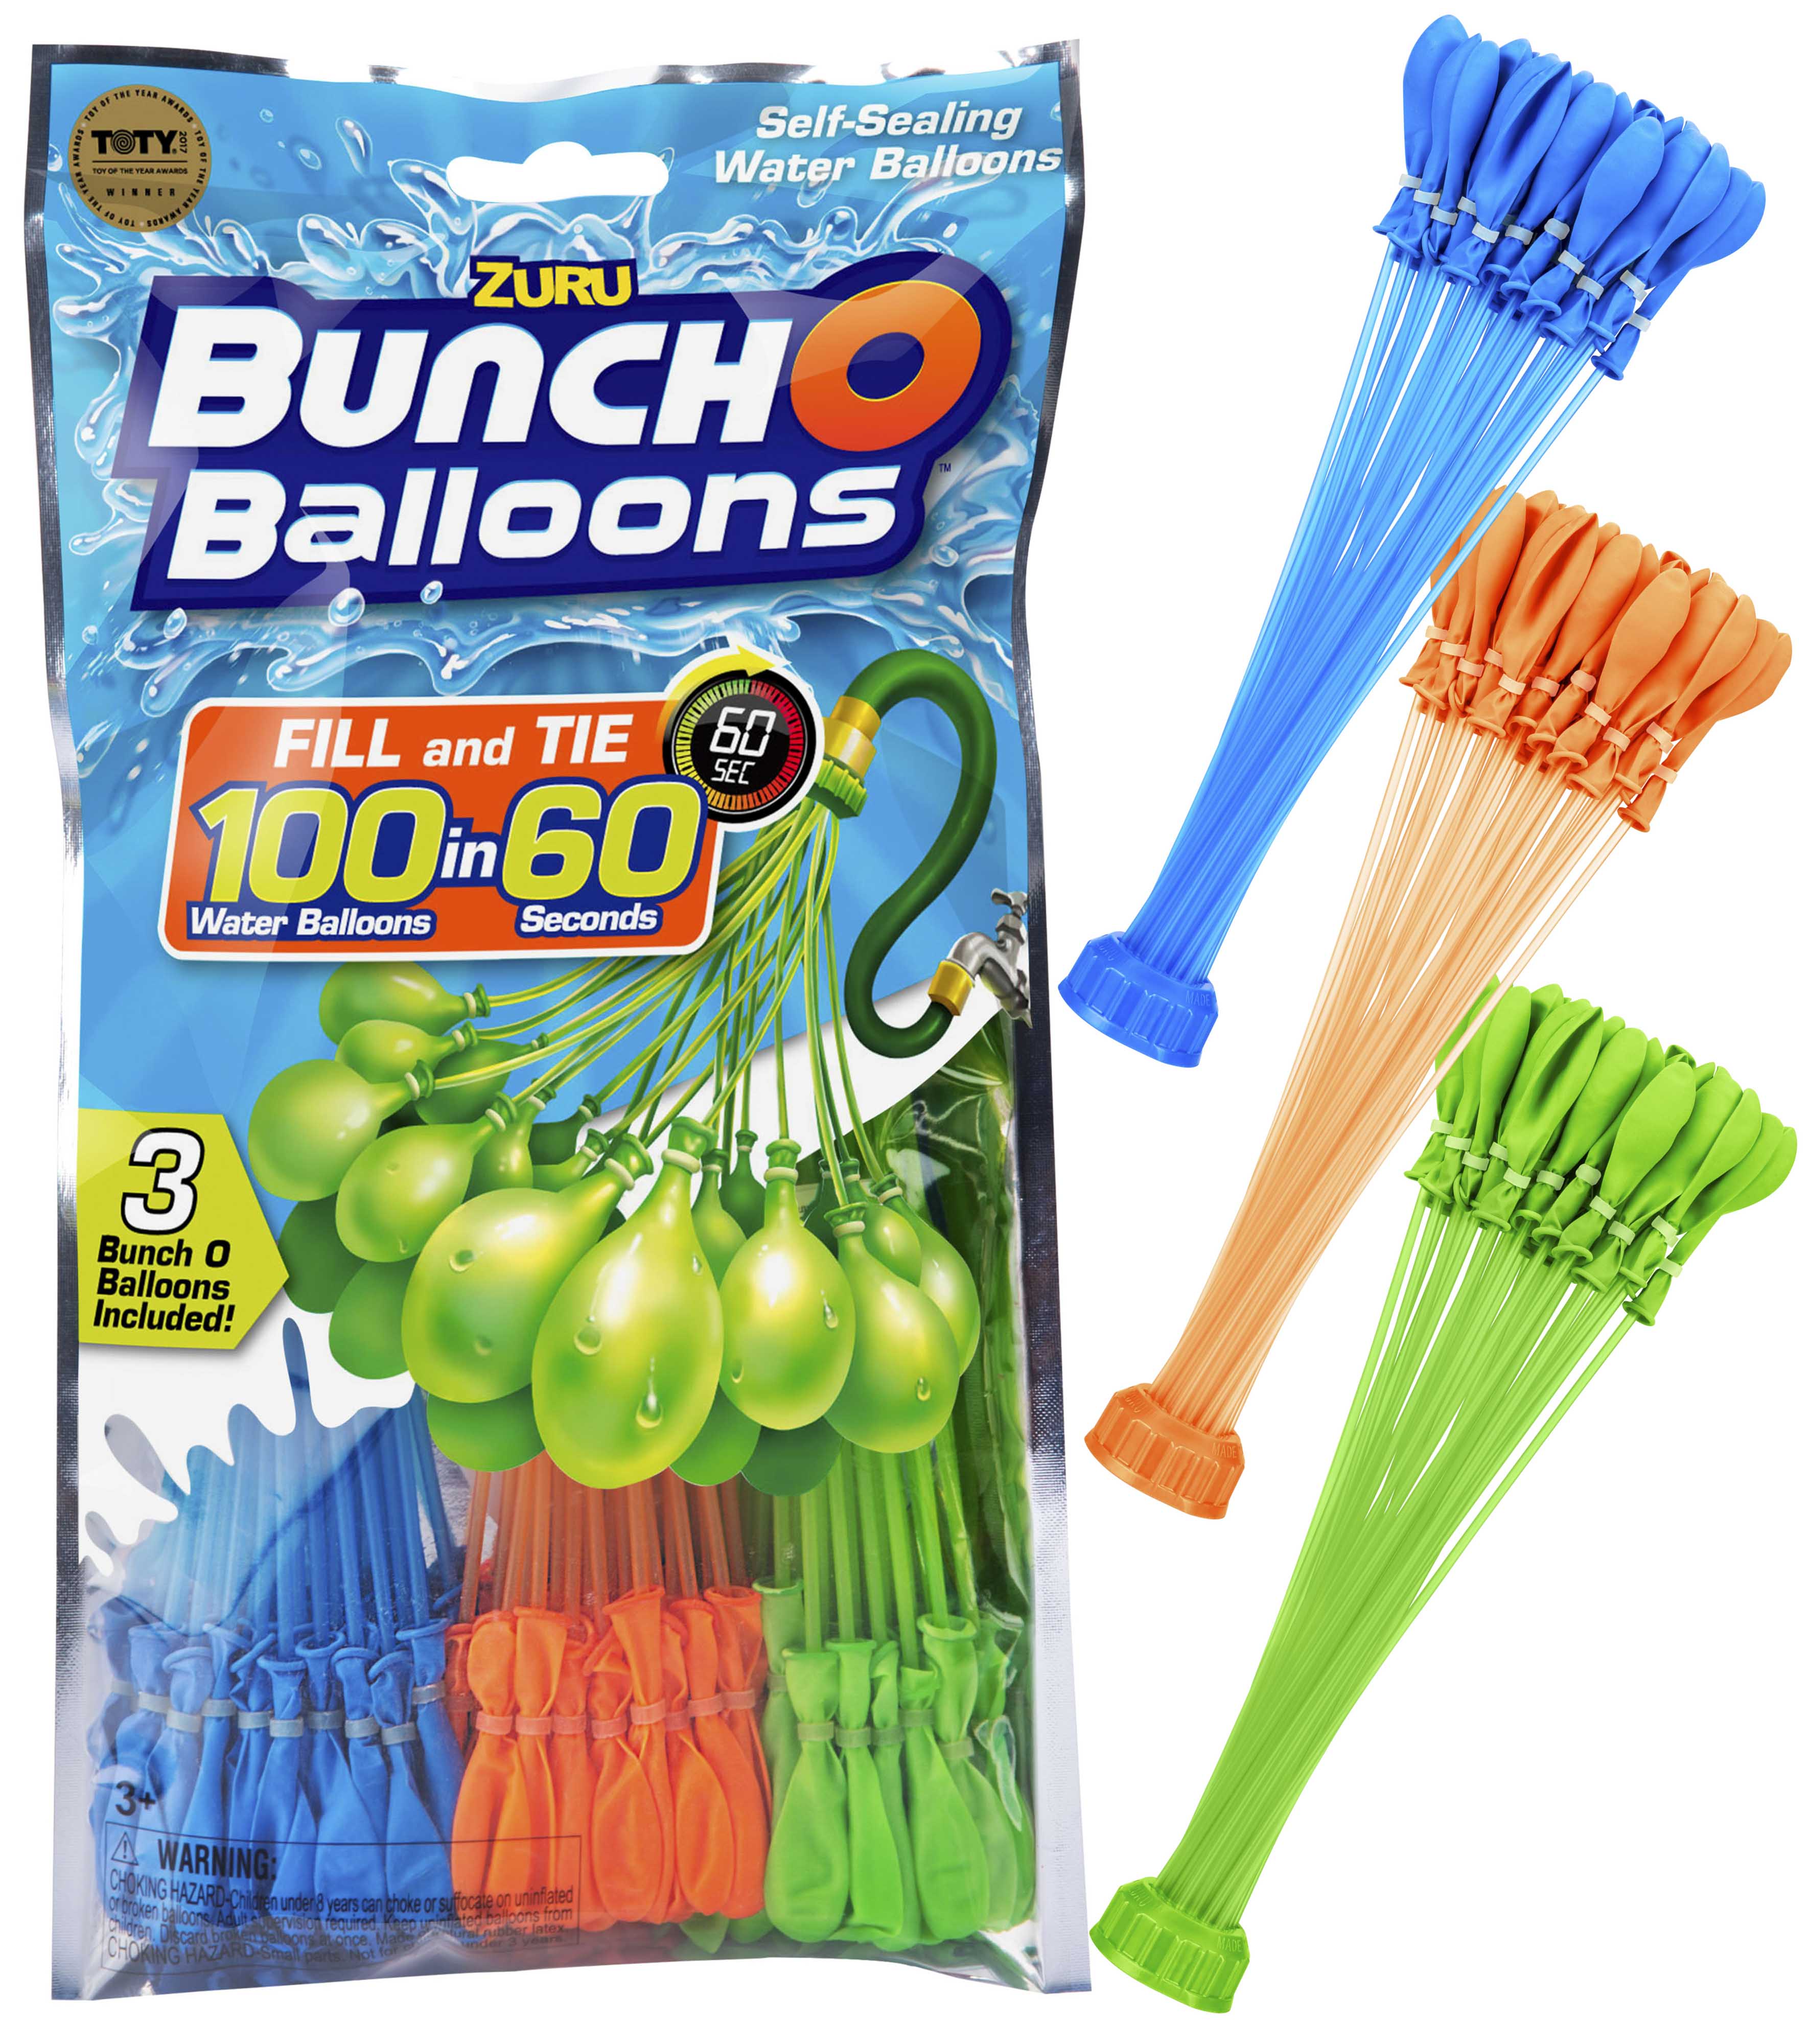 ZURU Bunch O Balloons 100 Selbstverschluss Wasserbomben NEU OVP 